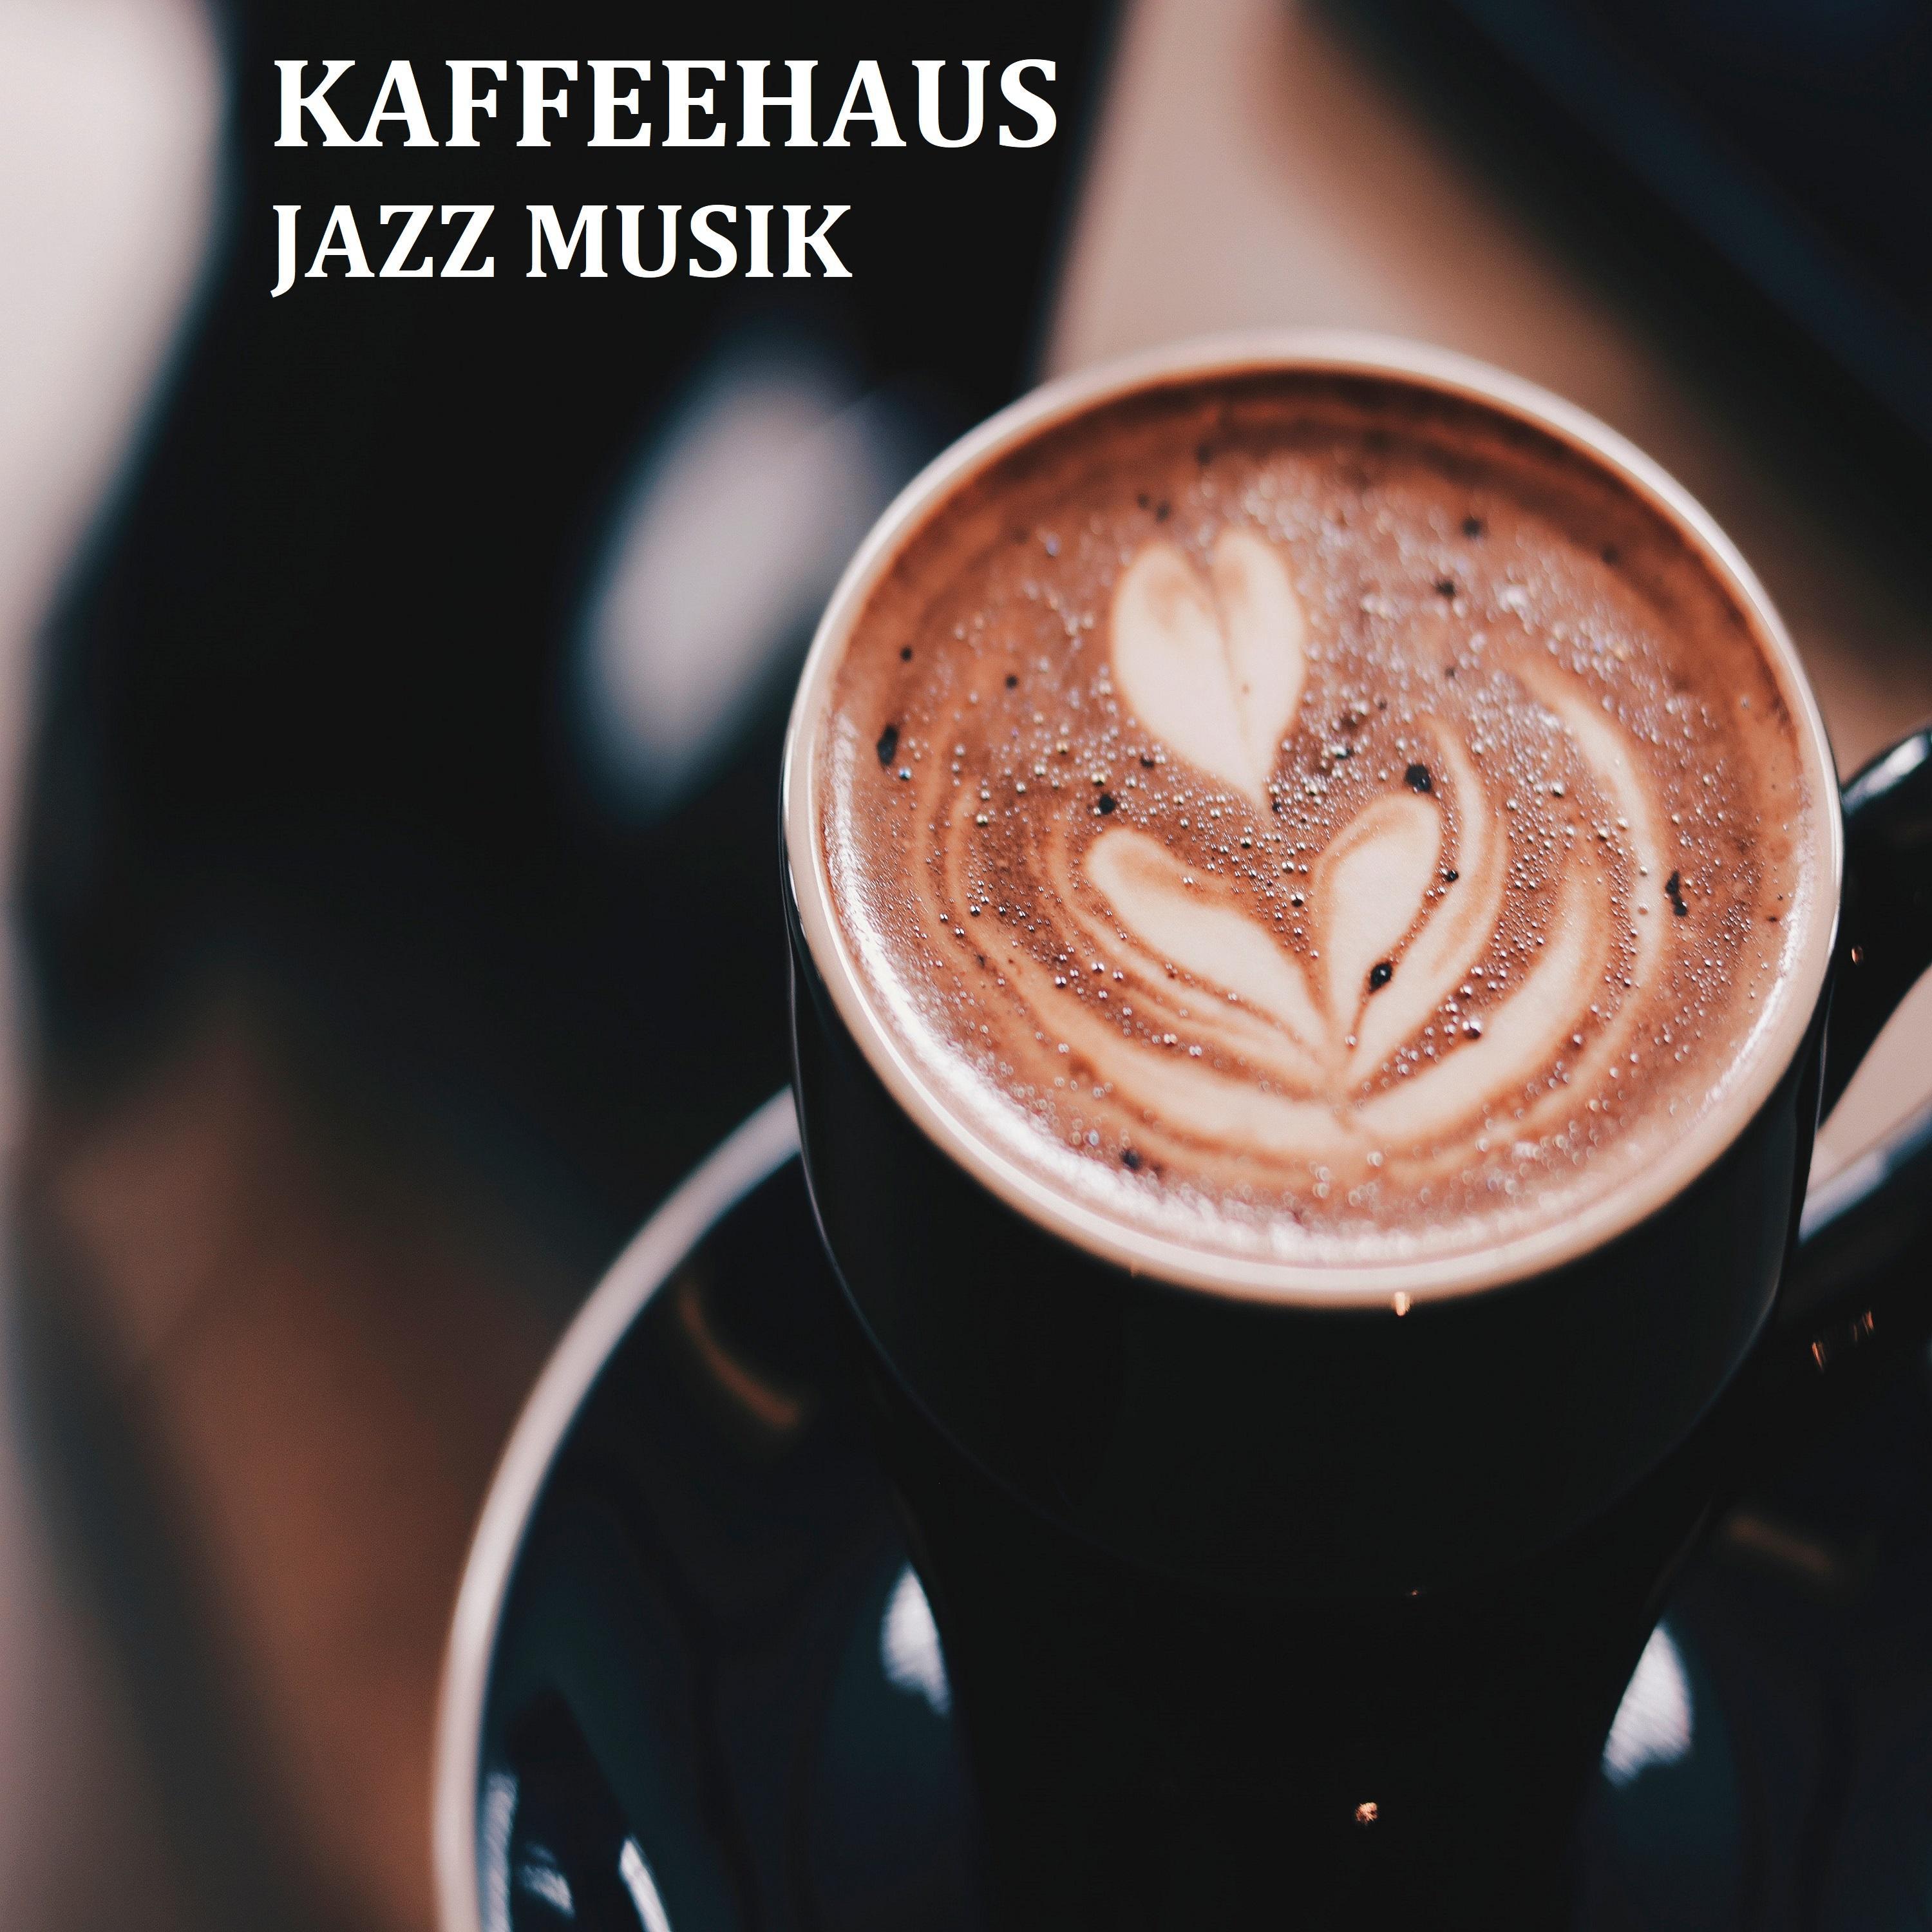 Kaffeehaus Jazz Musik